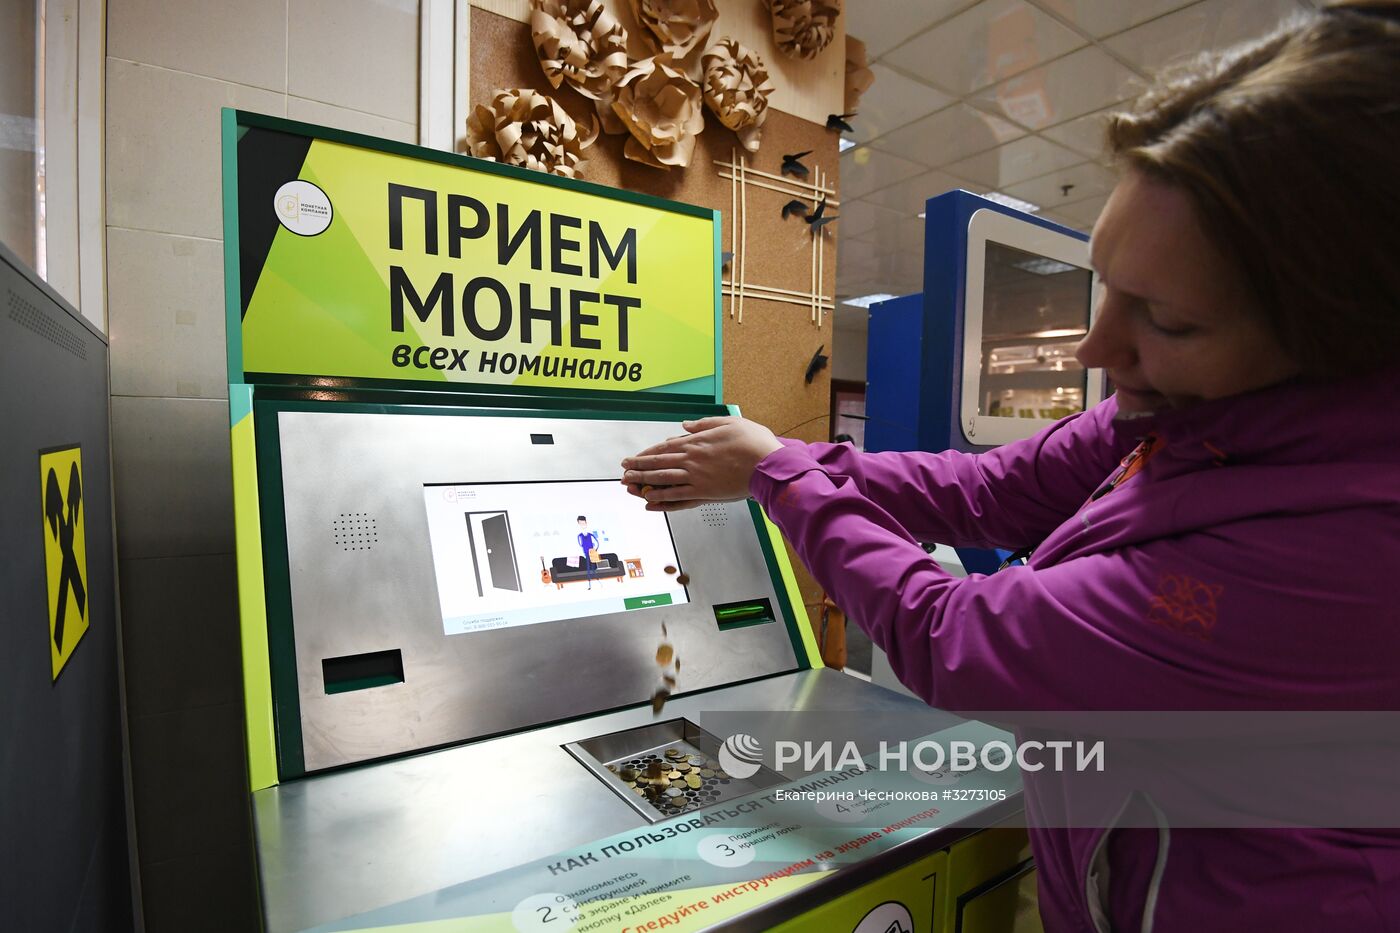 Терминалы по приёму монет появились в Москве